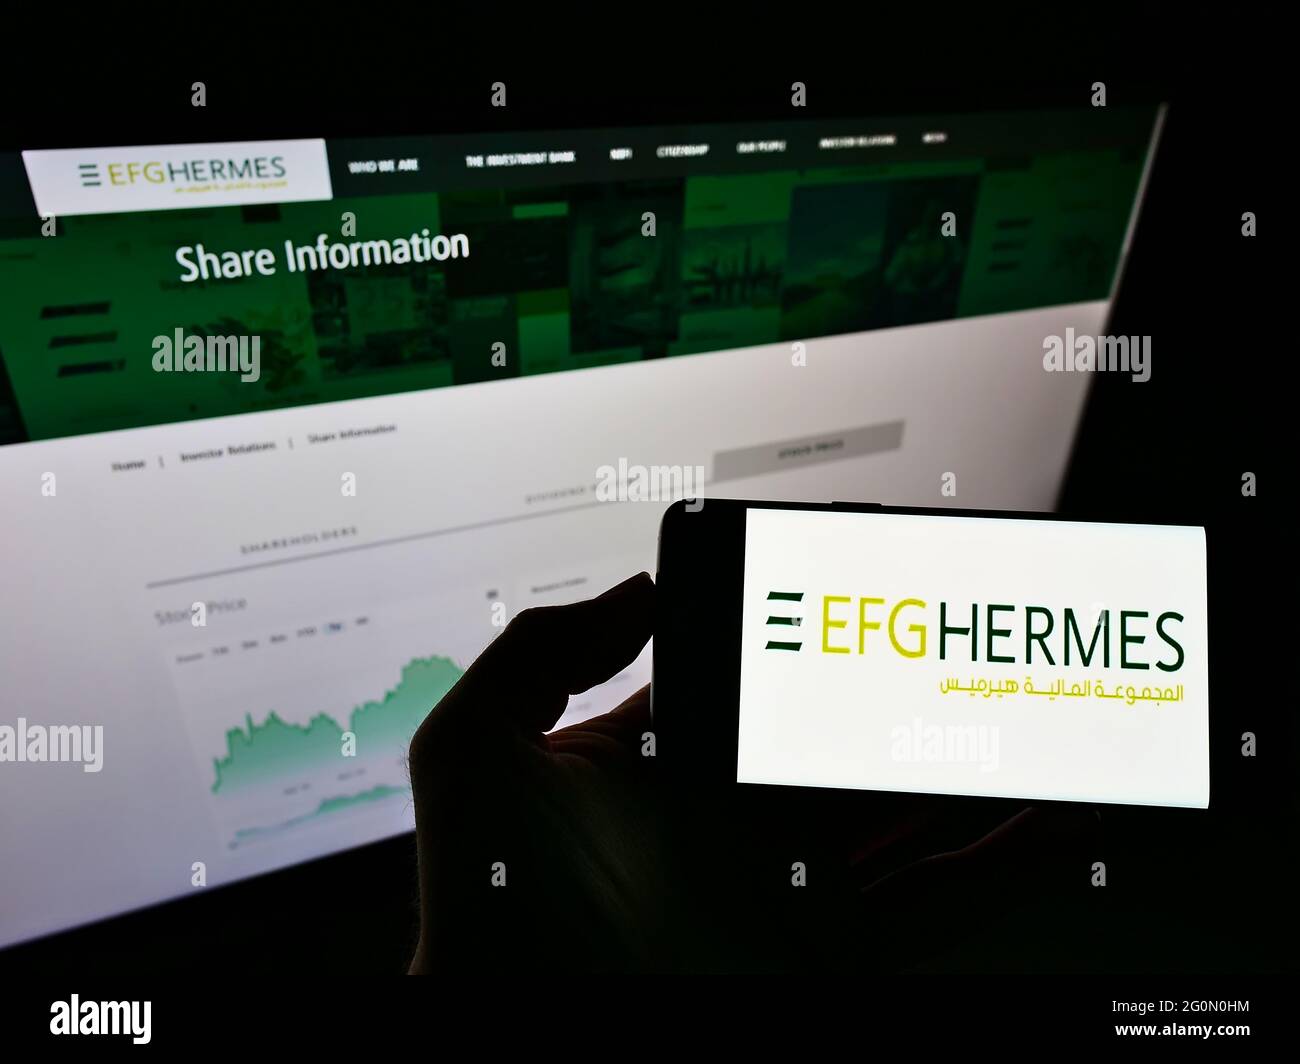 Personne tenant un smartphone avec le logo de la société financière égyptienne EFG Hermes Holding S.A.E. à l'écran devant le site Web. Mise au point sur l'affichage du téléphone. Banque D'Images